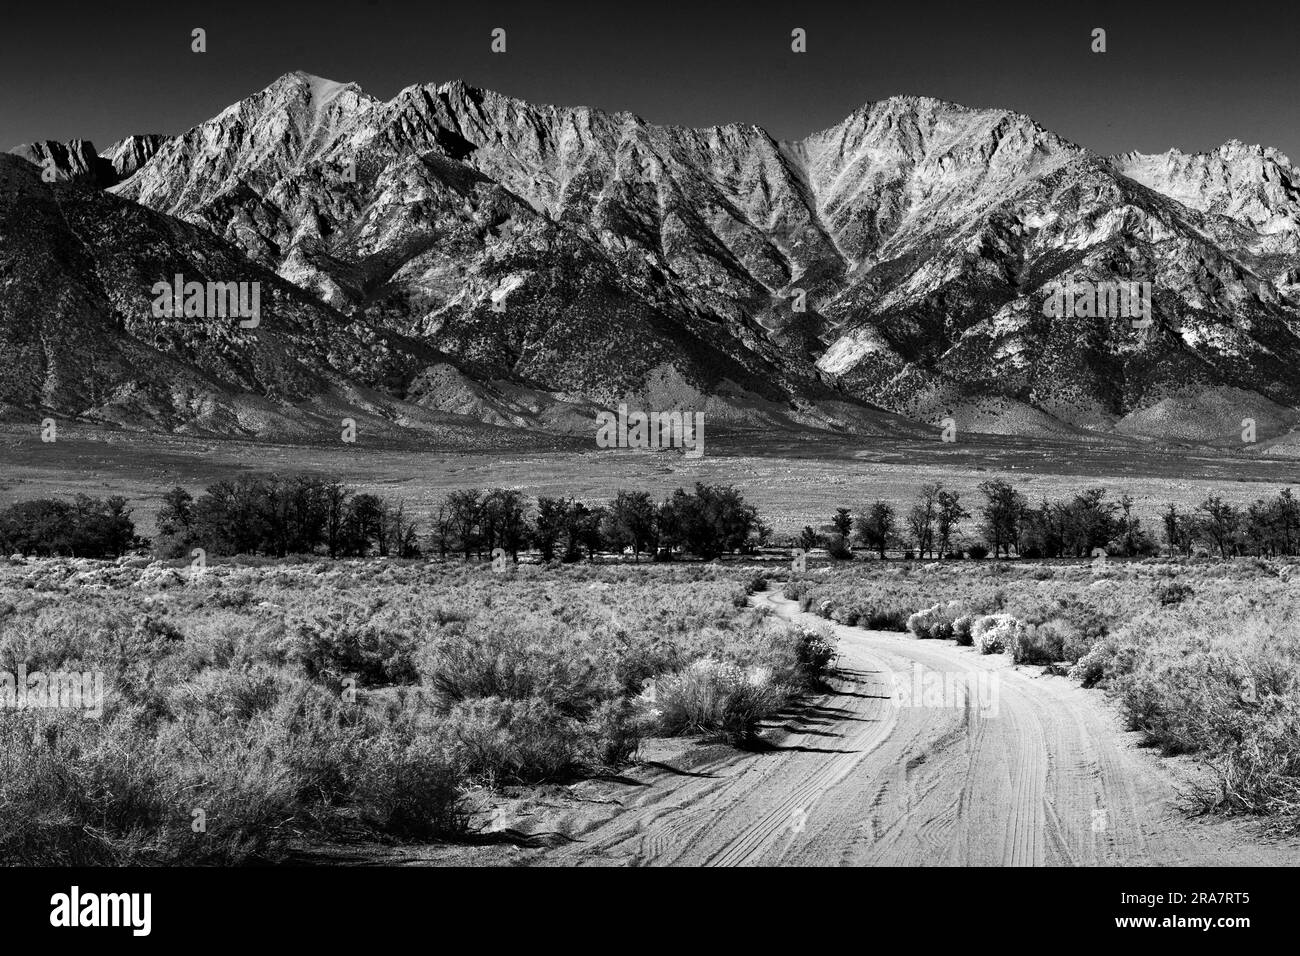 Camino de tierra blanco y negro en la llanura desértica que conduce a las estribaciones nevadas de las montañas de Sierra Nevada en la distancia en California Foto de stock